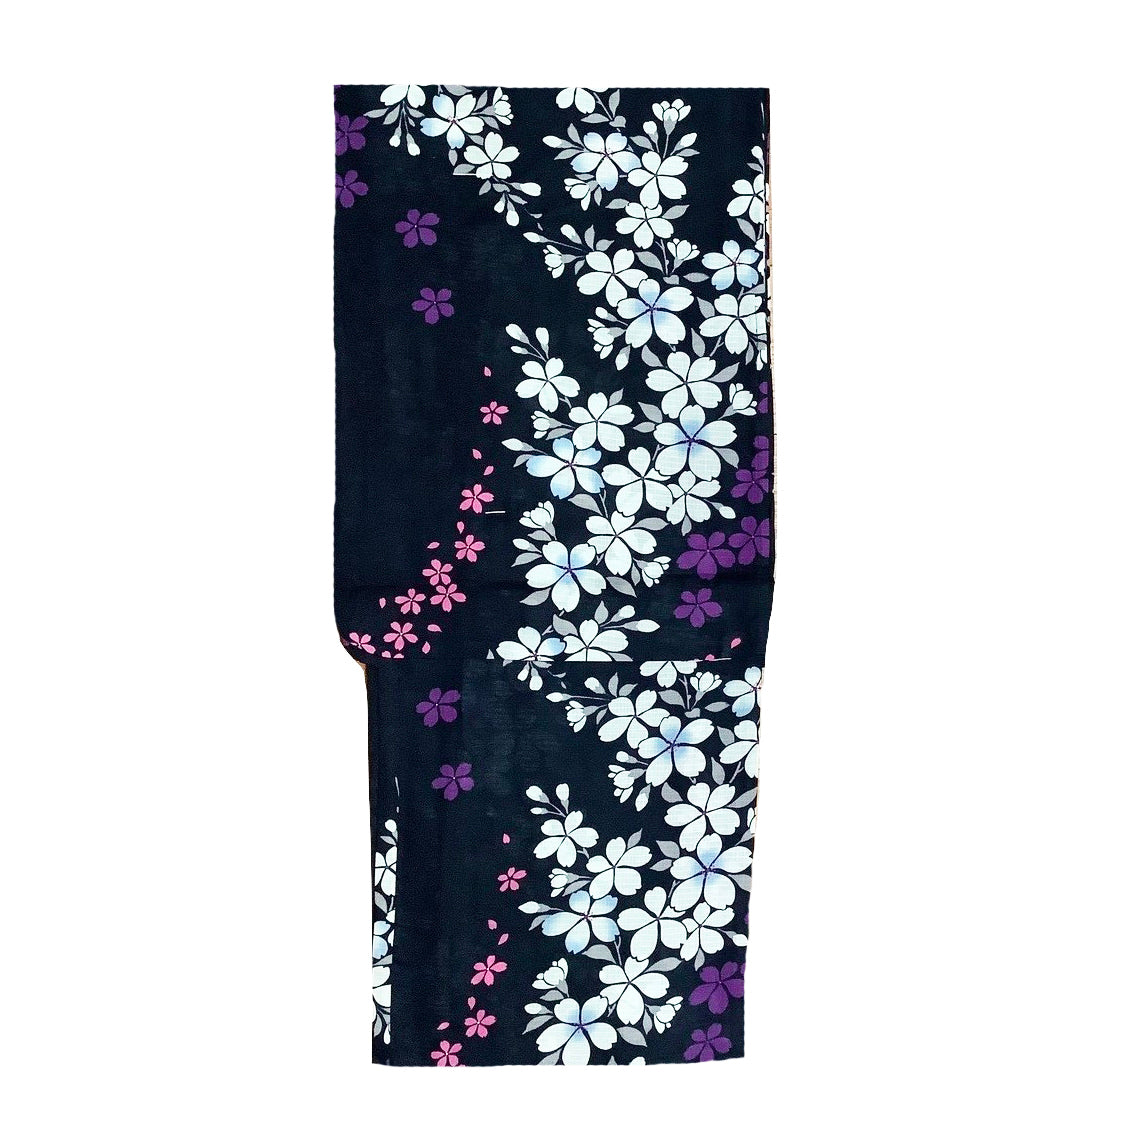 Yukata Kimono - Cherry Blossoms Black